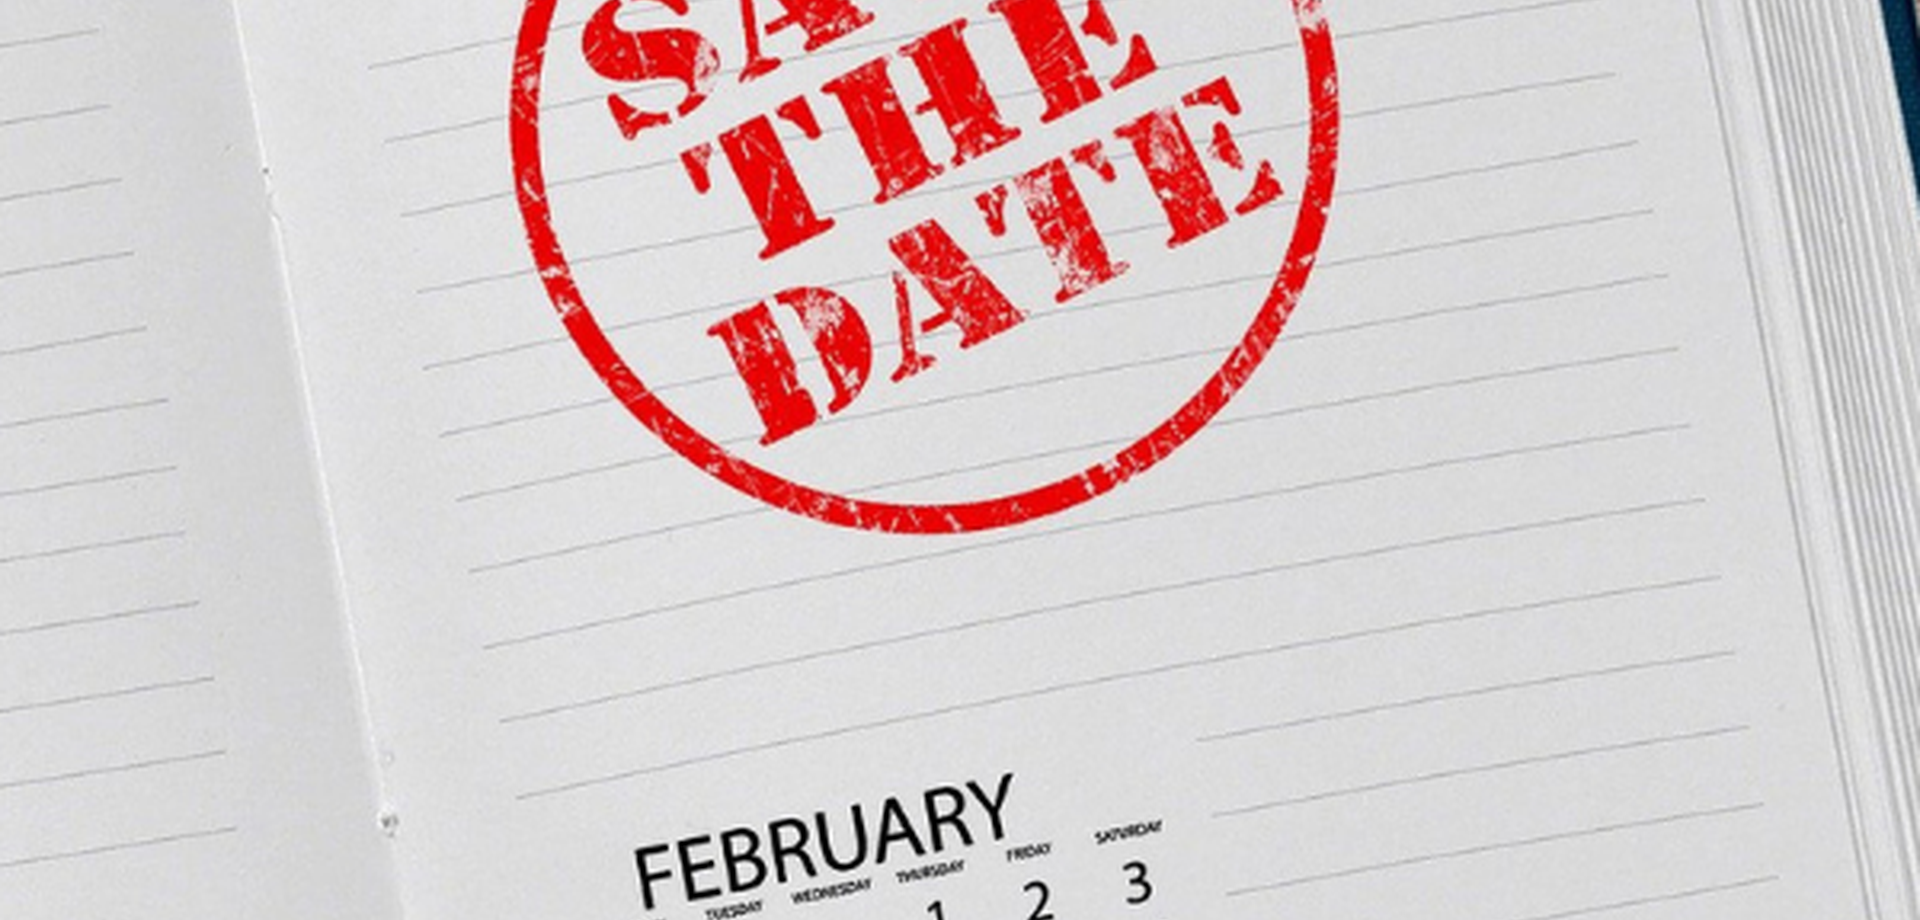 Eine weiße Seite eines Kalenderbuches ist aufgeschlagen. Dort steht in großen roten Buchstaben, umgeben von einem roten runden Kreis "Save the Date"